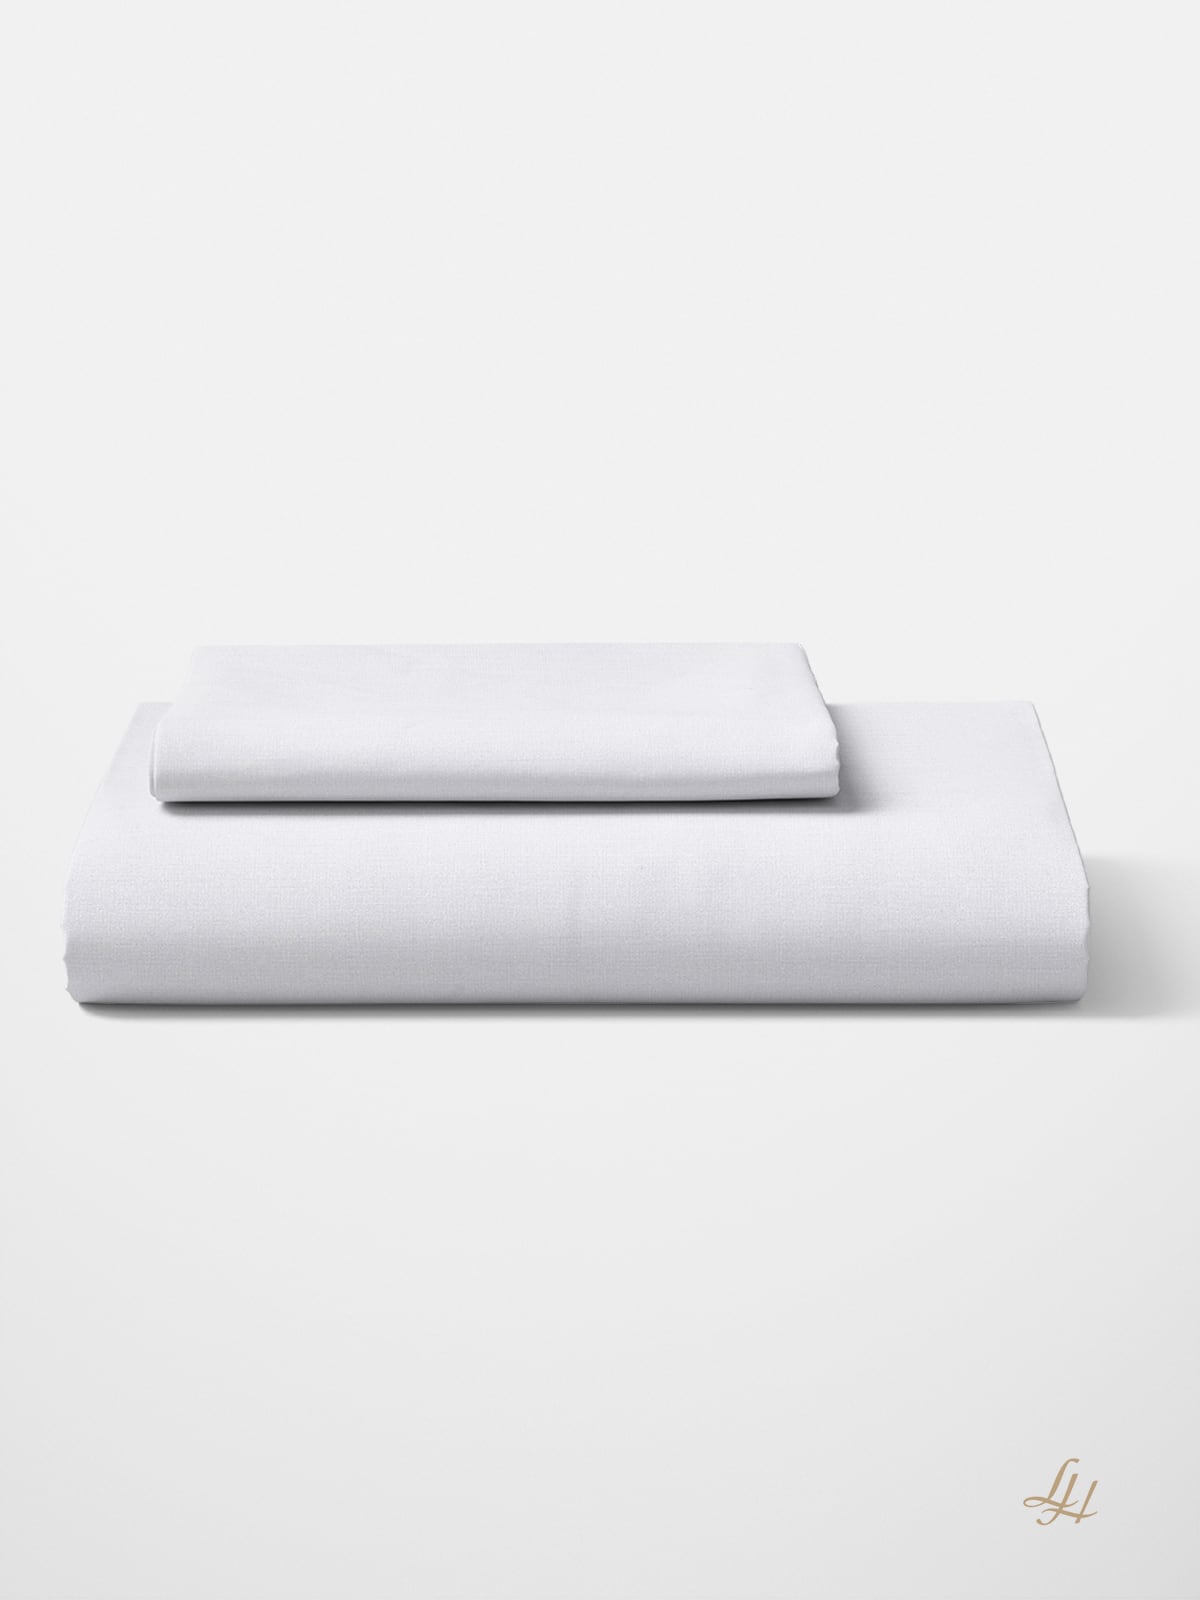 Bettbezug aus Halbleinen in weiß gefaltet